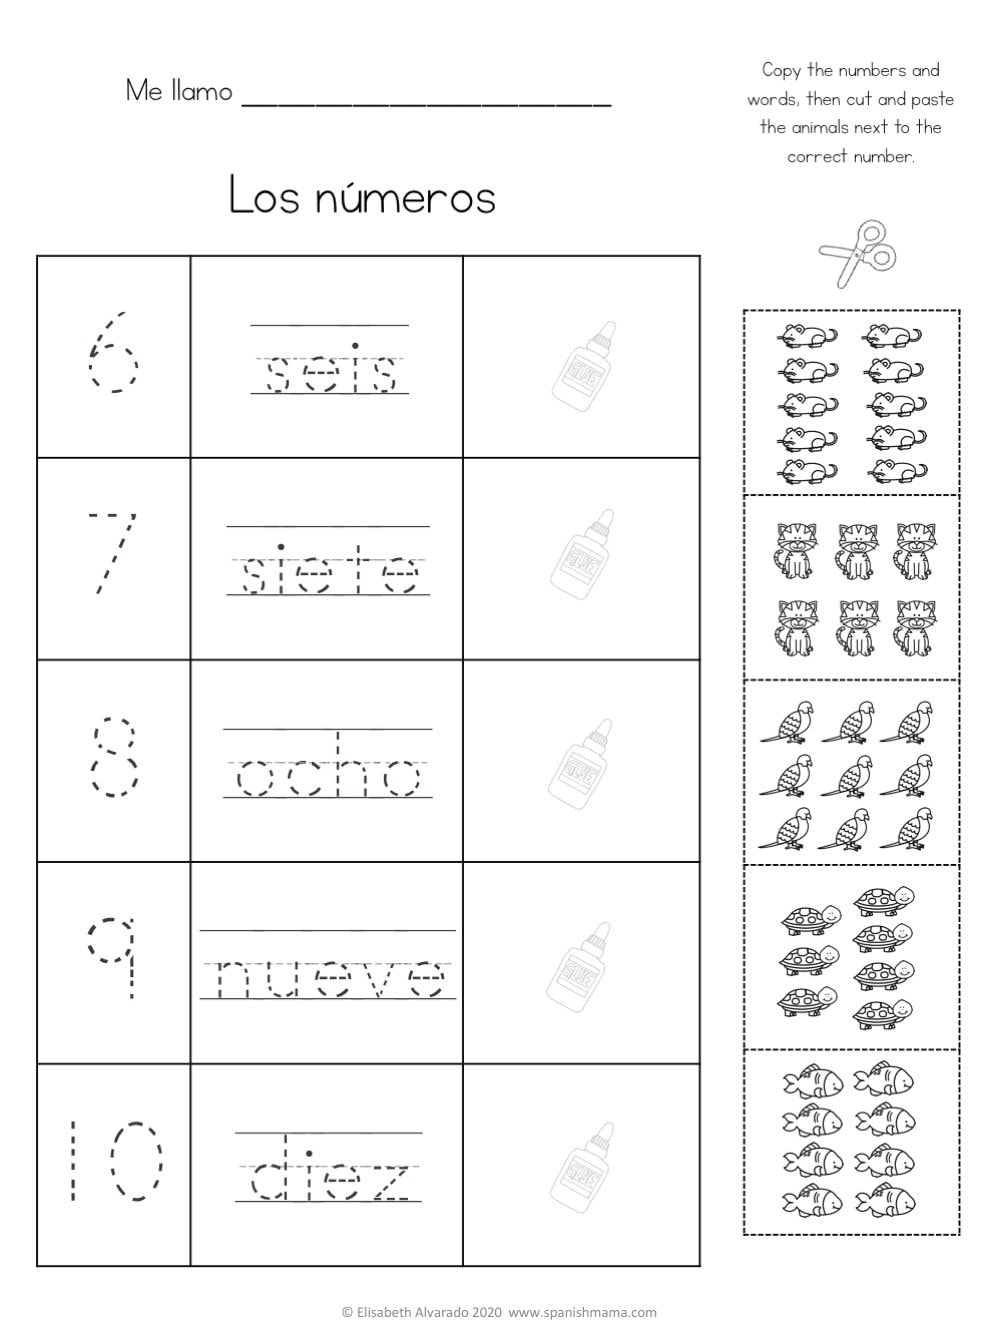 Spanish Numbers Worksheet 1 100